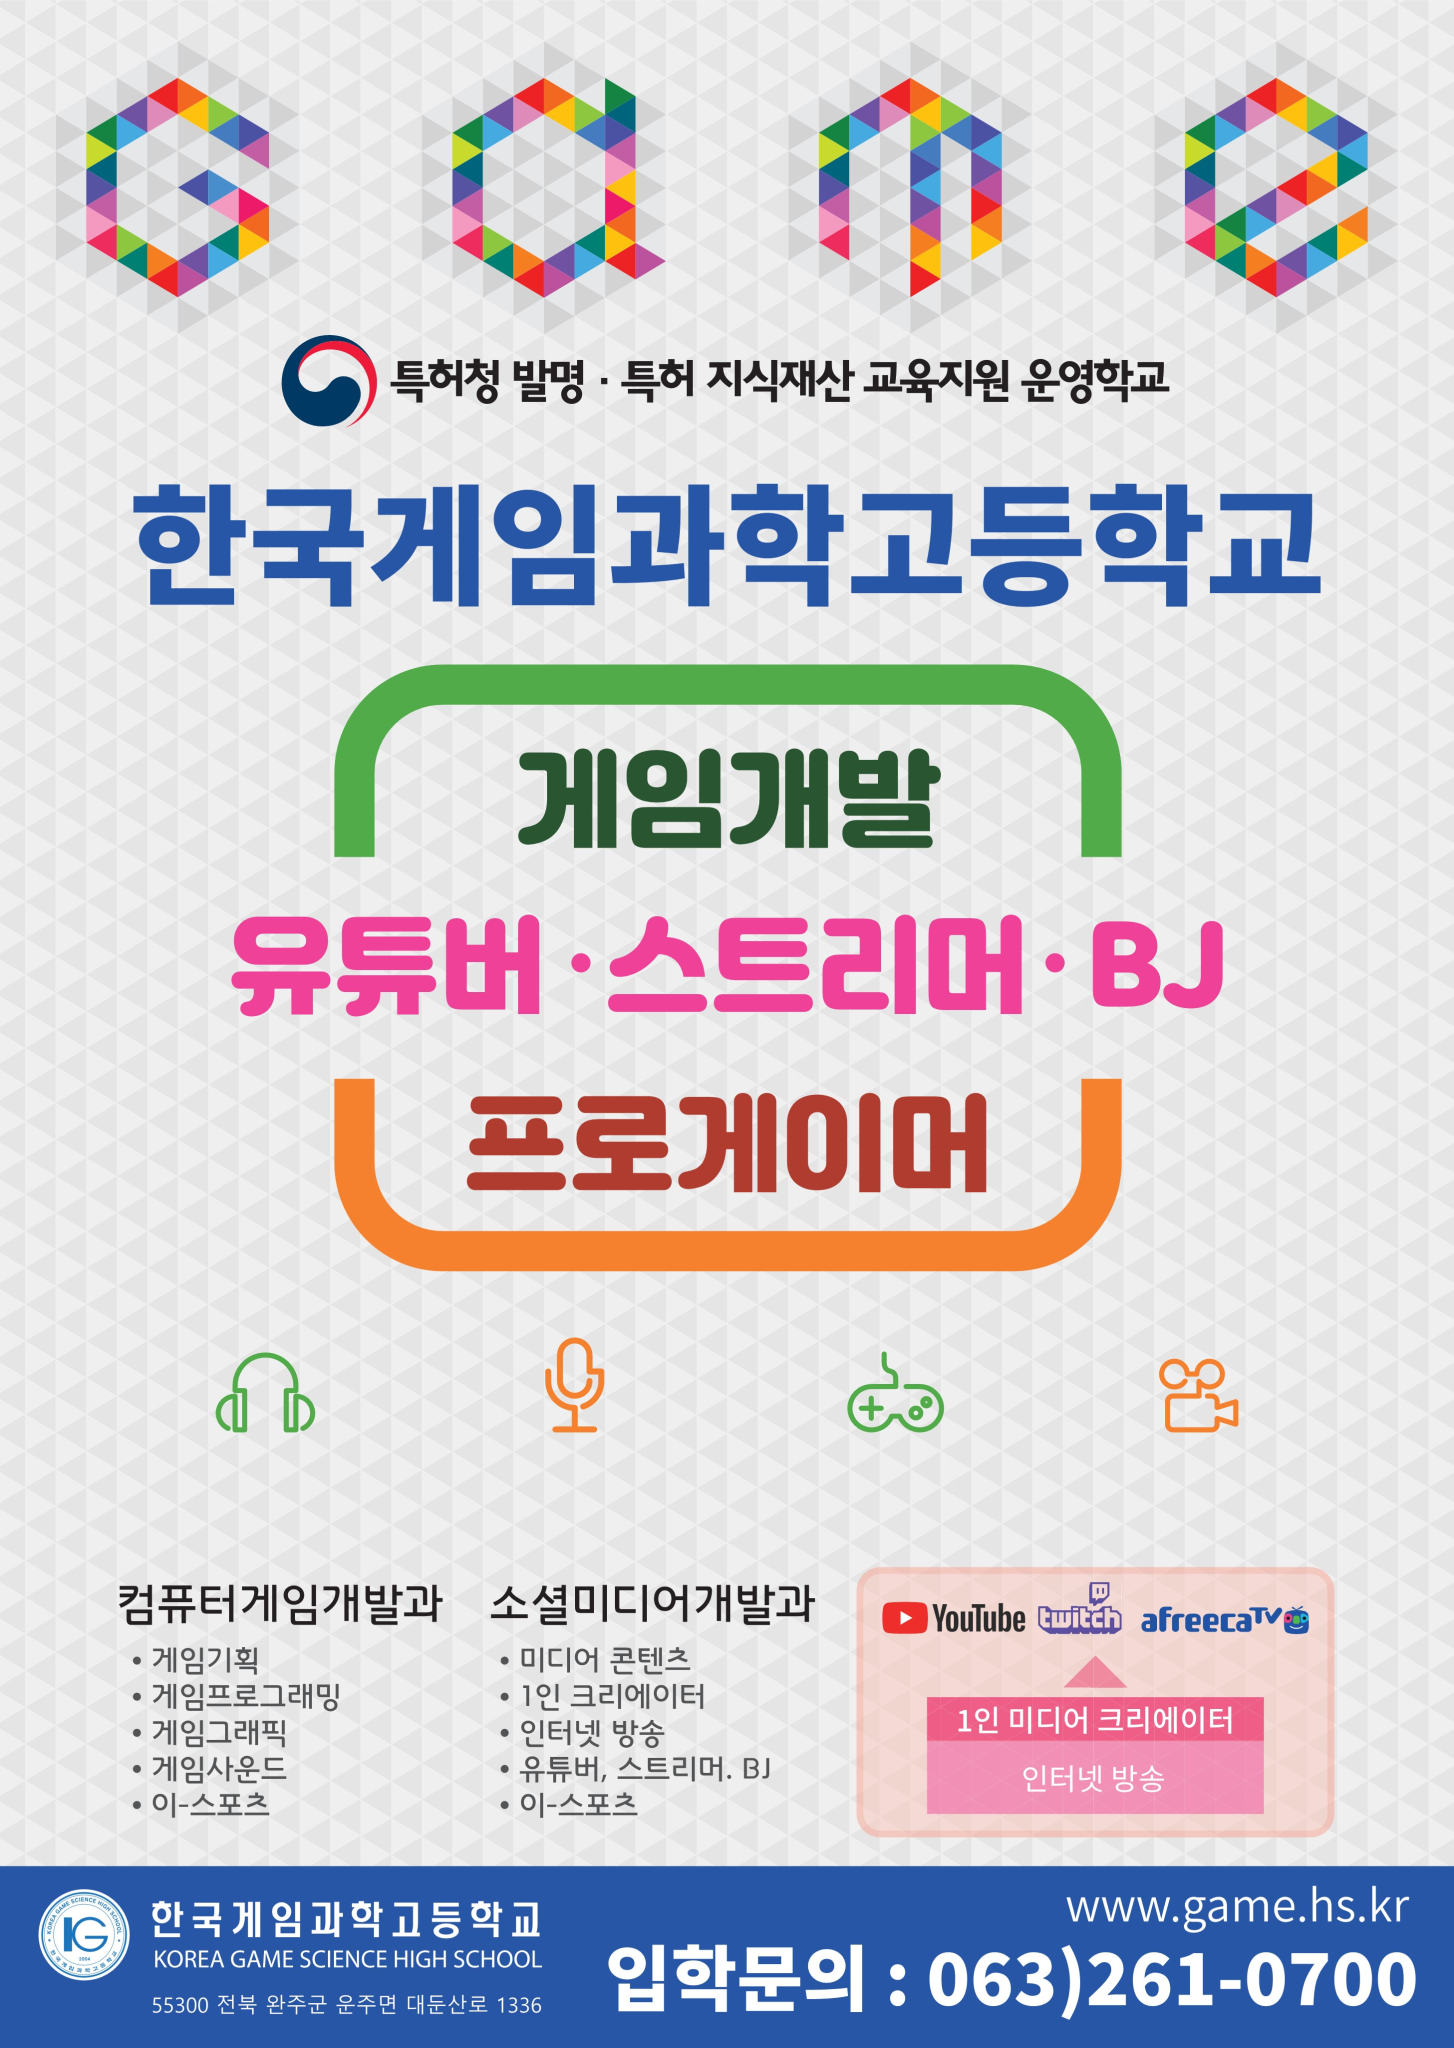 한국게임과학고등학교 포스터_1